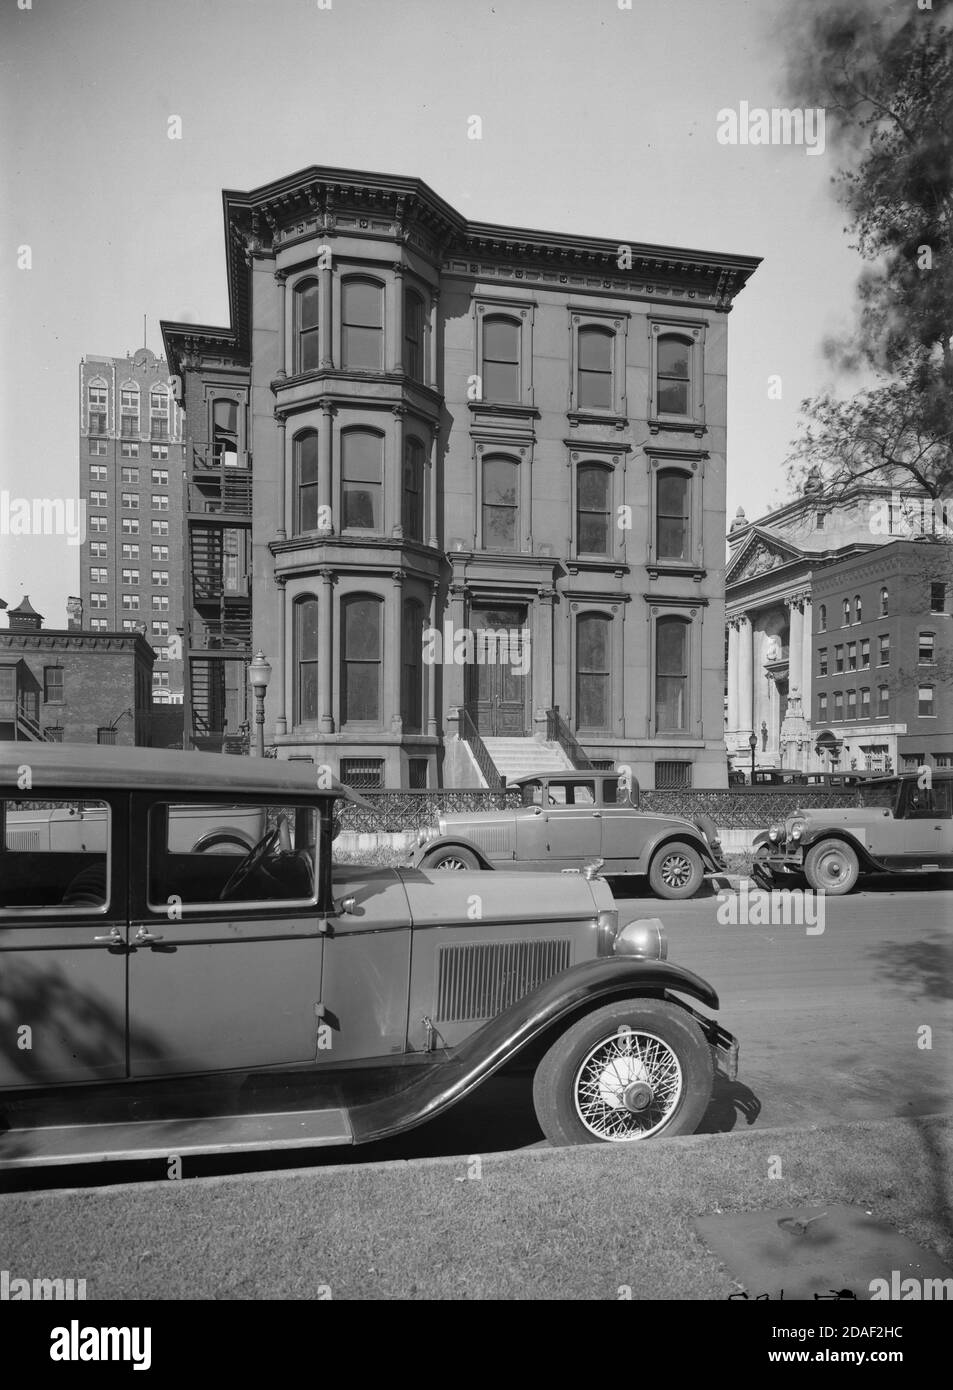 Vue extérieure de l'auditorium John B. Murphy Memorial, architecte Marshall et Fox, au 50 East Erie Street à Chicago, Illinois, vers 1923-1936. Banque D'Images